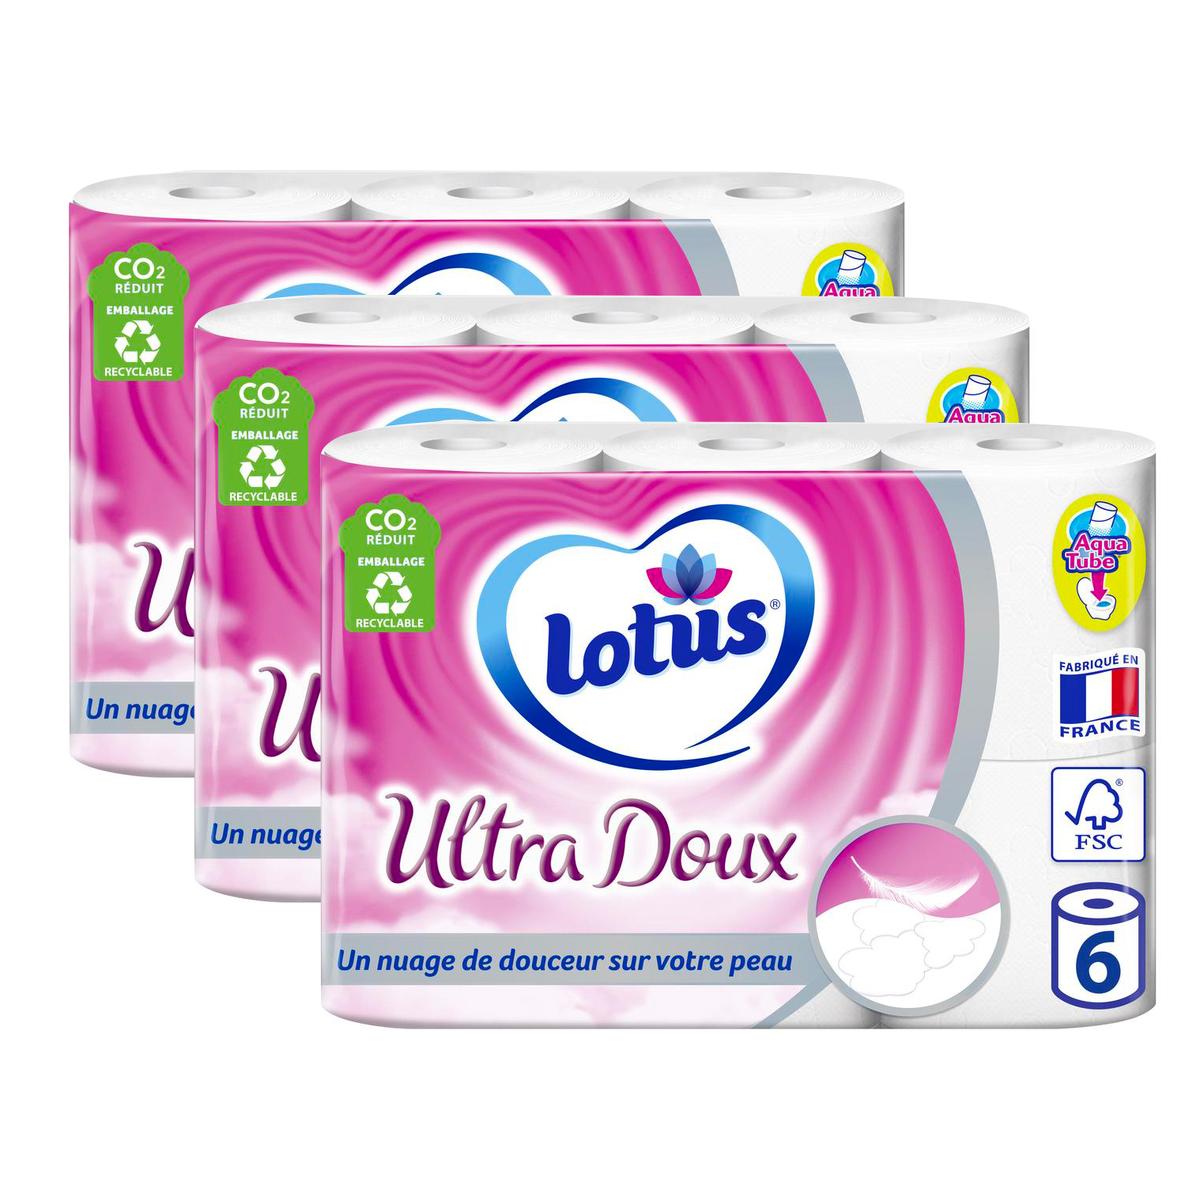 Achat Lotus Lingette papier toilette humide Aloé Douceur, 42 lingettes